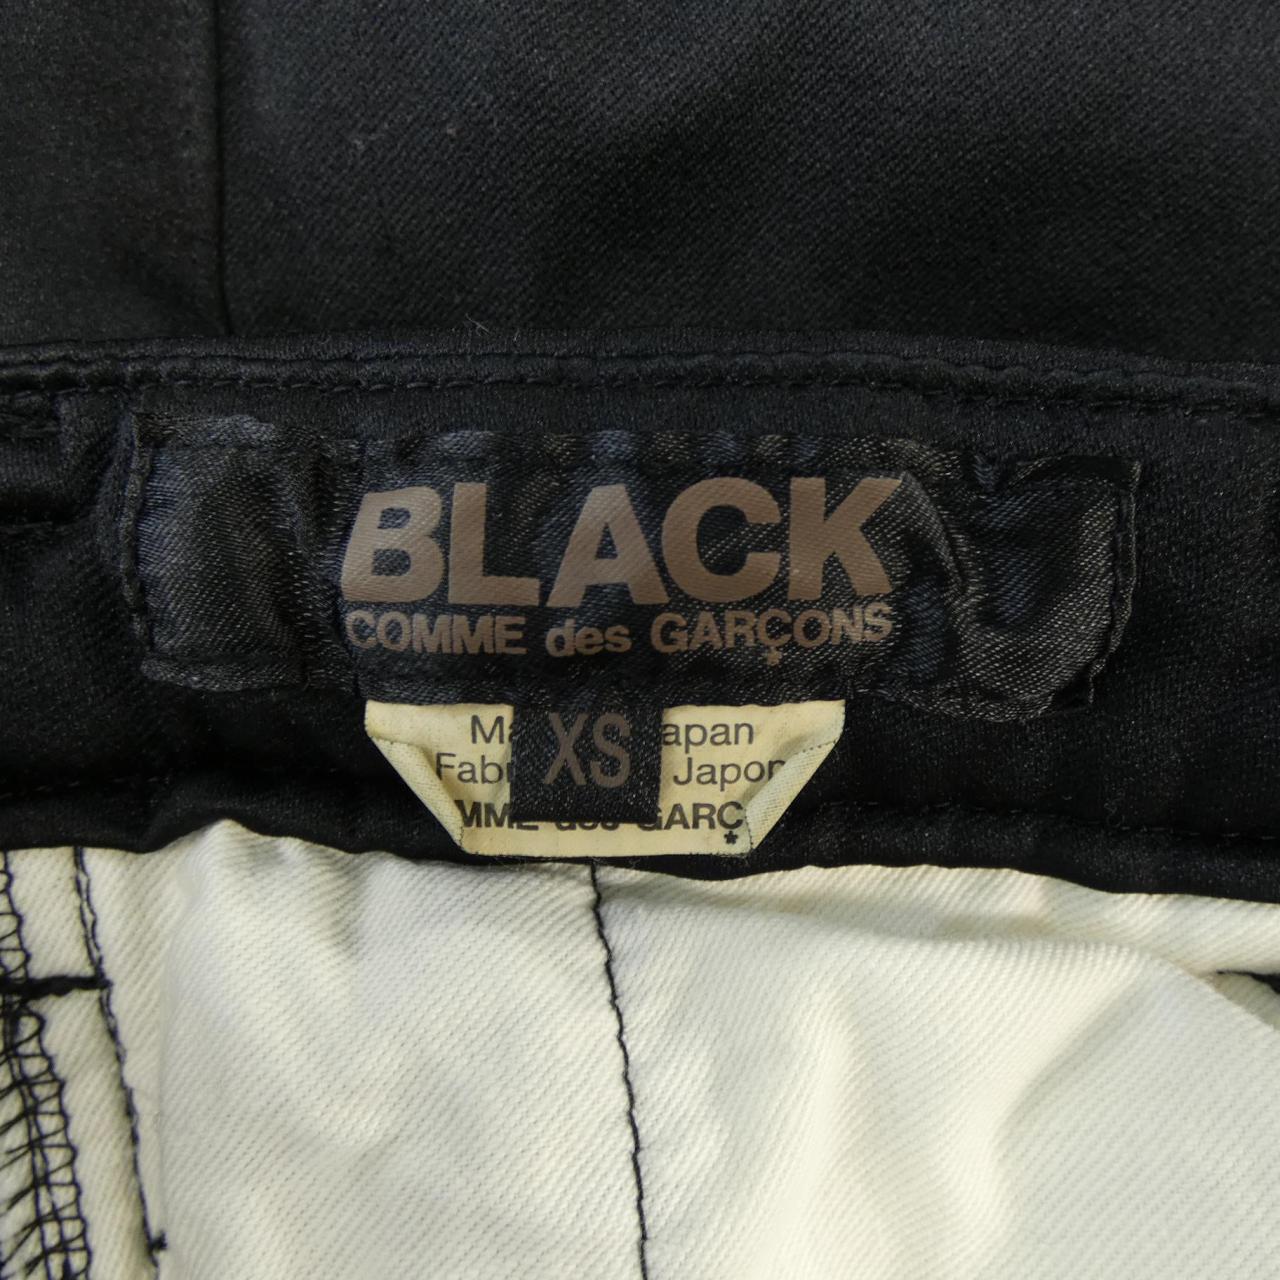 黑色COMDEL GARCONS褲子